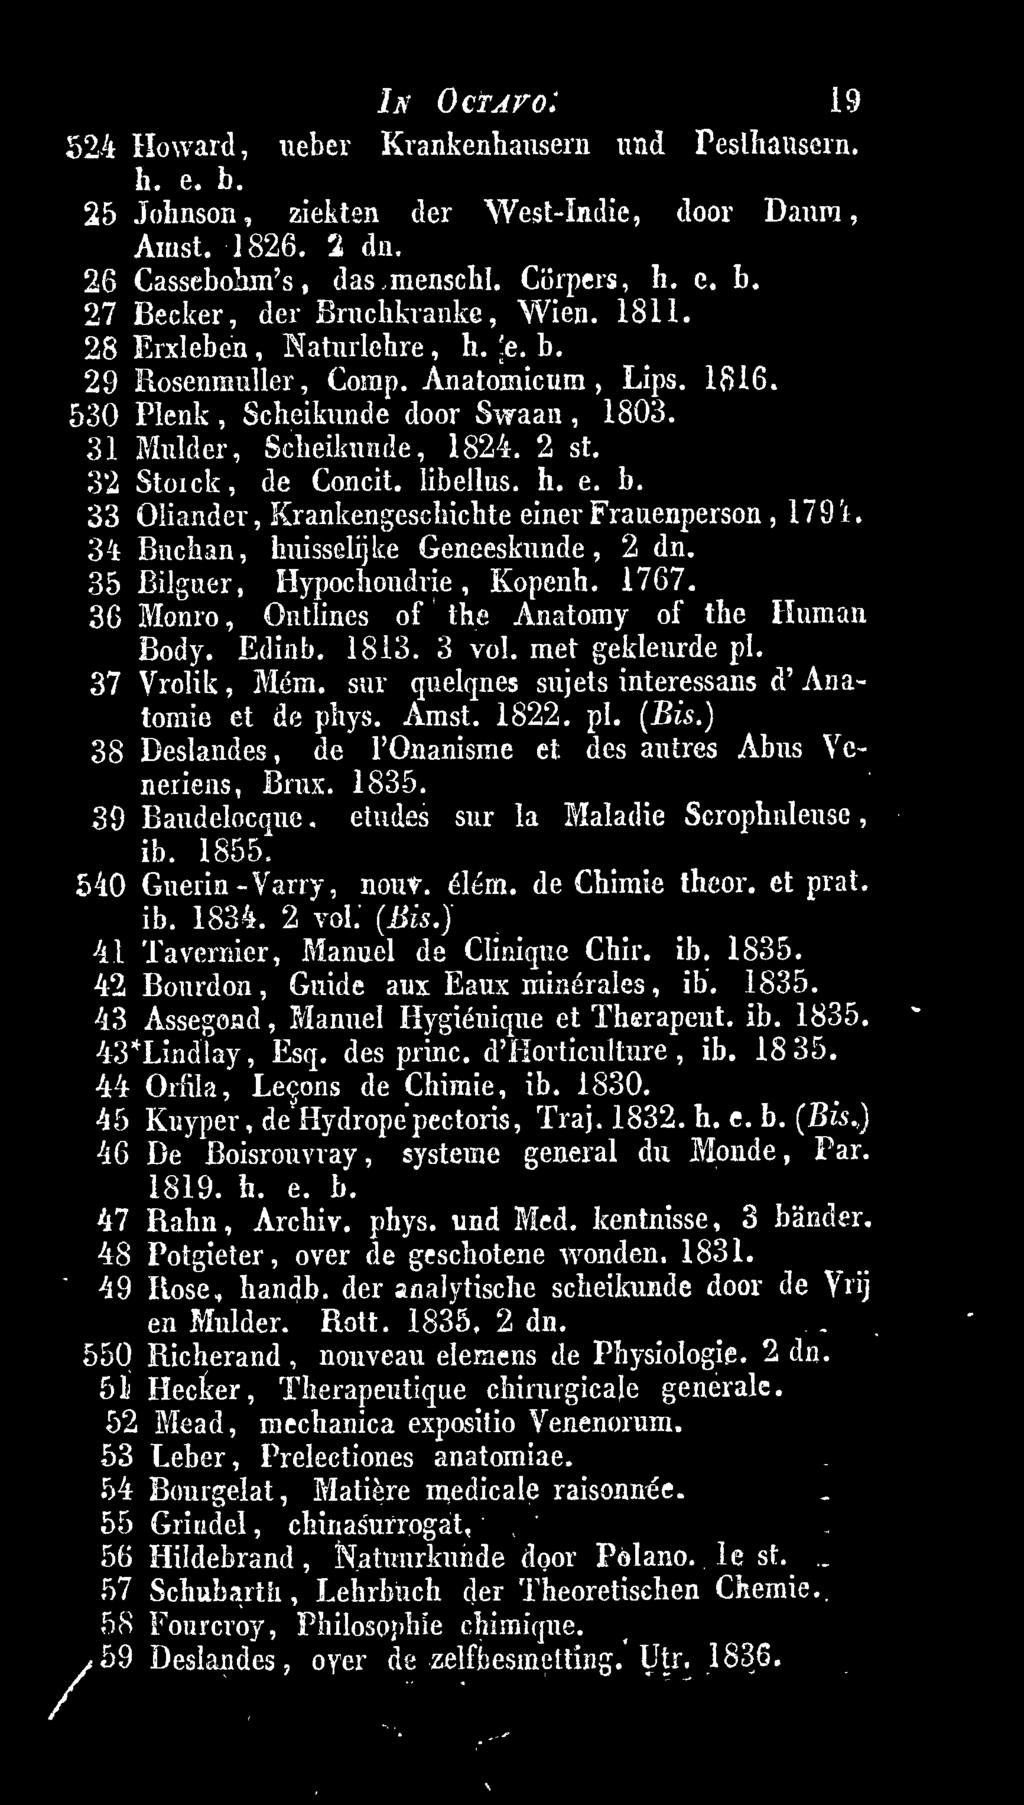 1835. 39 Baudelocque. etudes sur la Maladie Scrophuleuse ib. 1855. 540 Guerin-Varry, nouv. élém. de Chimie theor. et prat. ib. 1834. 2 vol. (Bis.) 41 Tavernier, Manuel de Clinique Chir. ib. 1835.